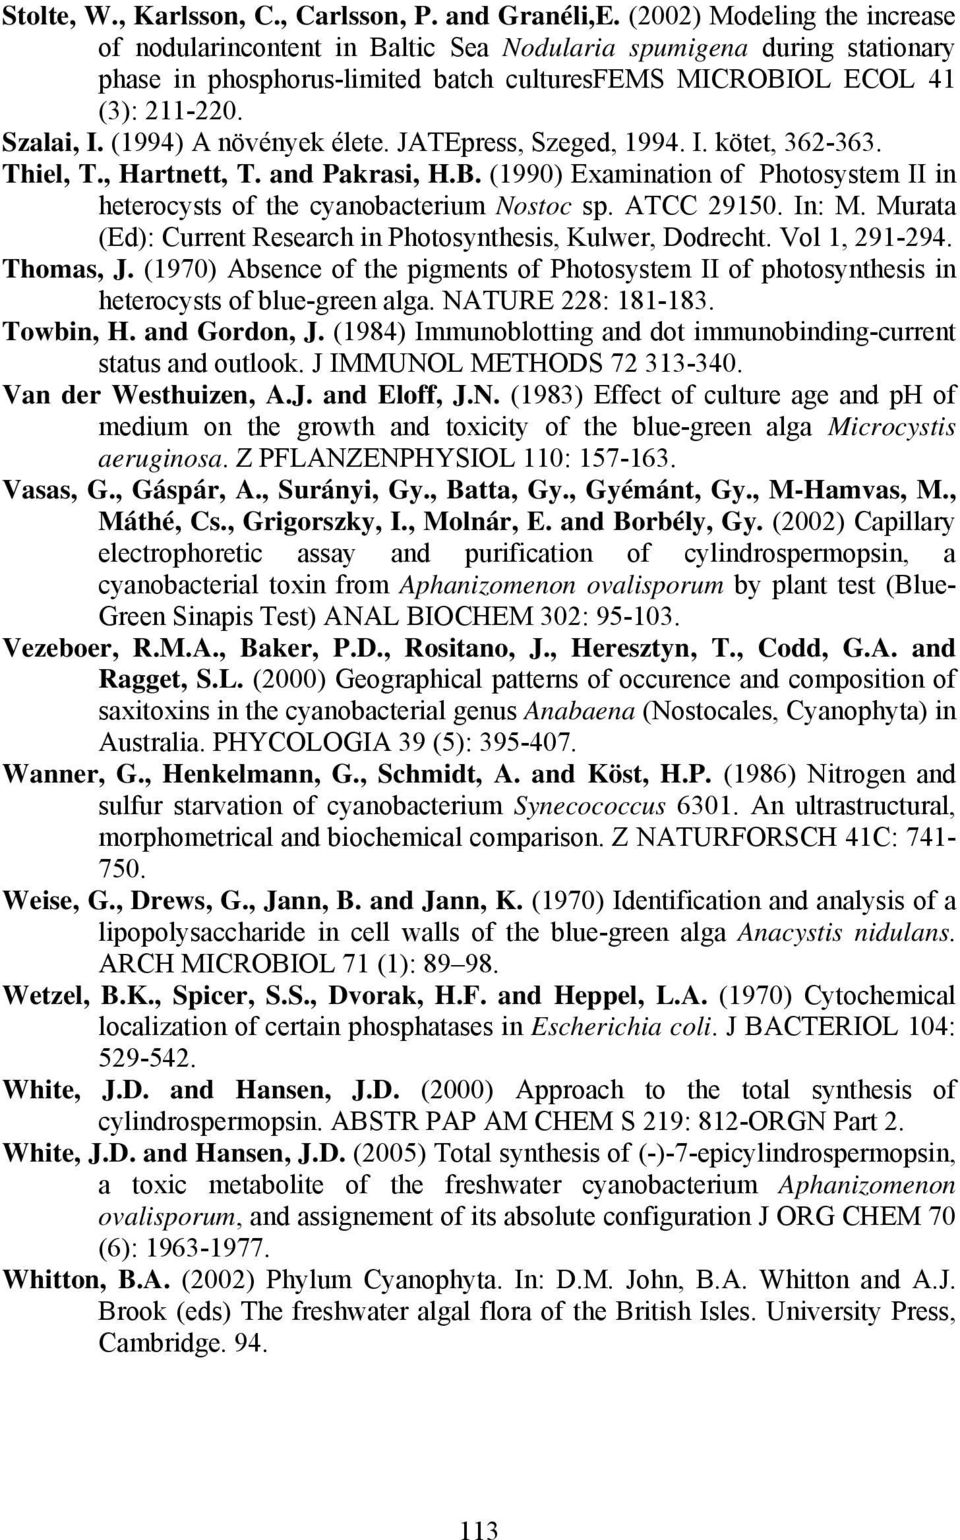 (1994) A növények élete. JATEpress, Szeged, 1994. I. kötet, 362-363. Thiel, T., Hartnett, T. and Pakrasi, H.B. (1990) Examination of Photosystem II in heterocysts of the cyanobacterium Nostoc sp.